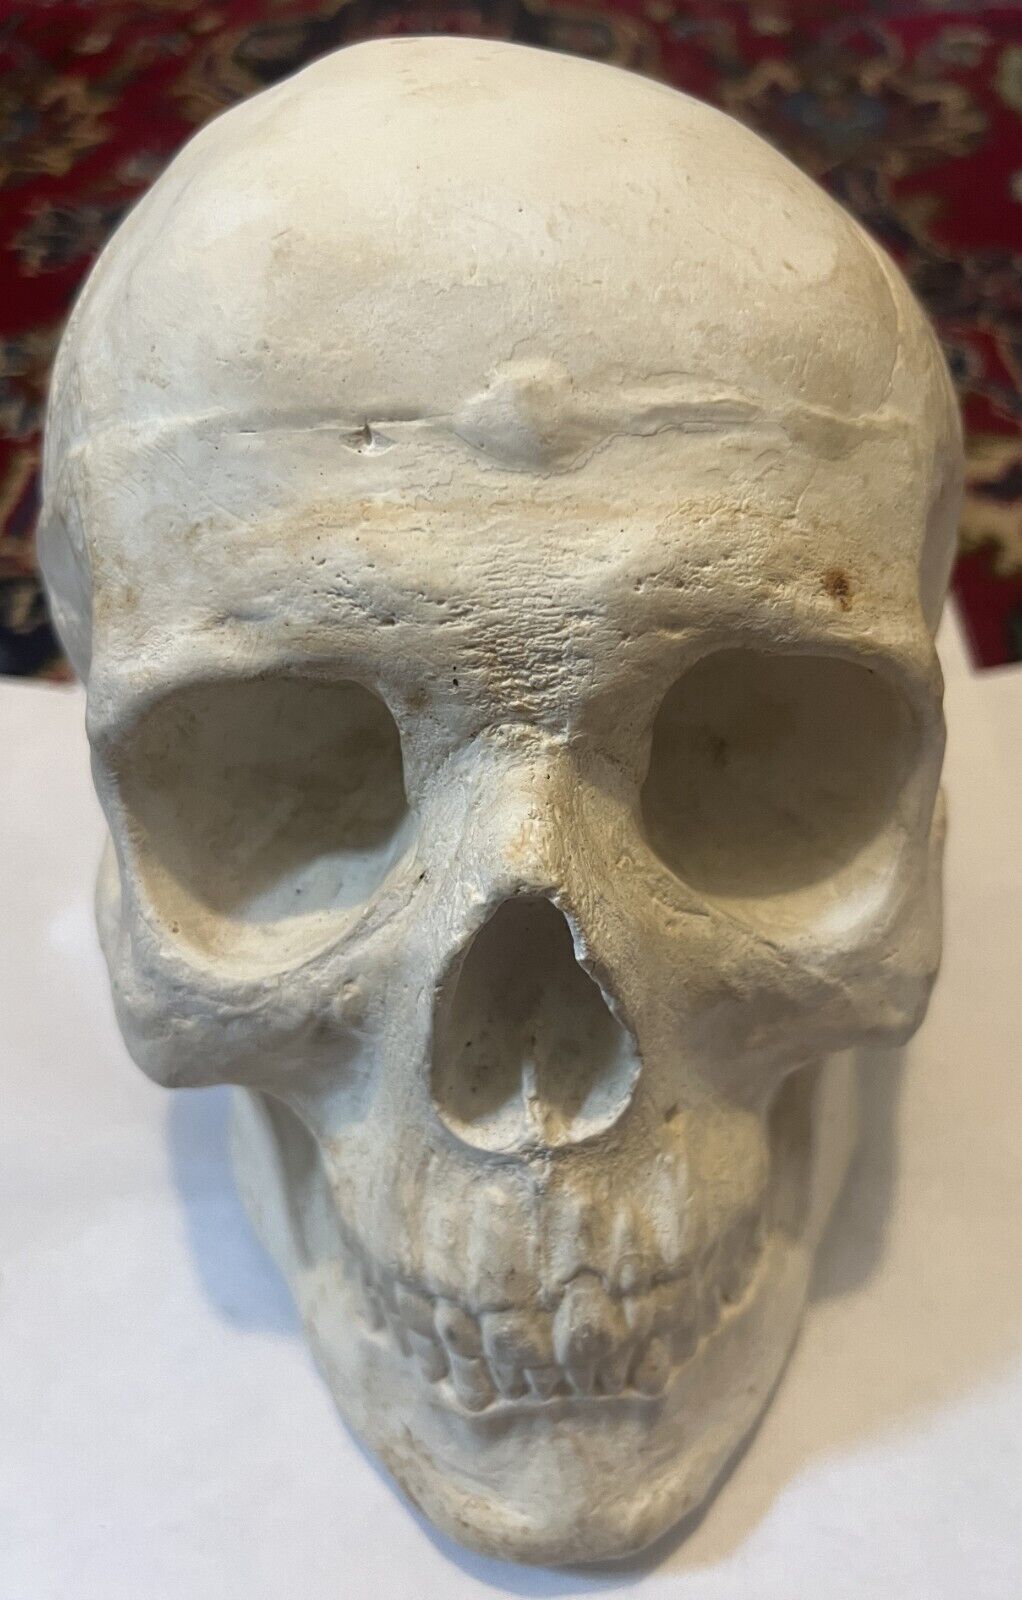 Plaster skull, from a cast, heavy